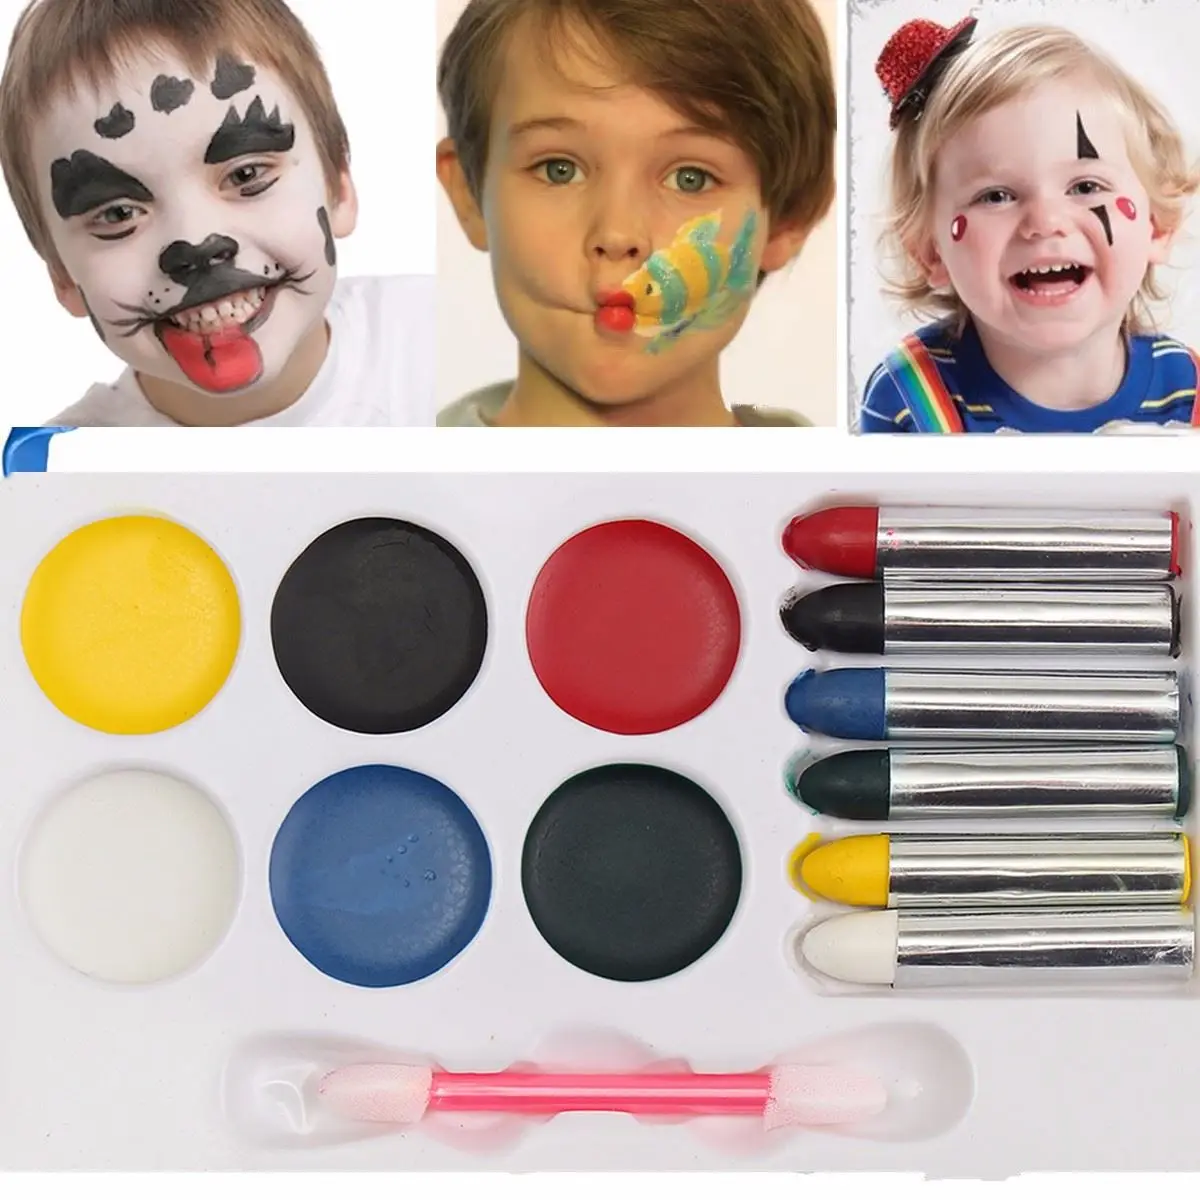 Face paint перевод. Набор красок Аква Гримм профессиональный. Грим на лице для детей. Грим на лице красками. Грим для детей краски.